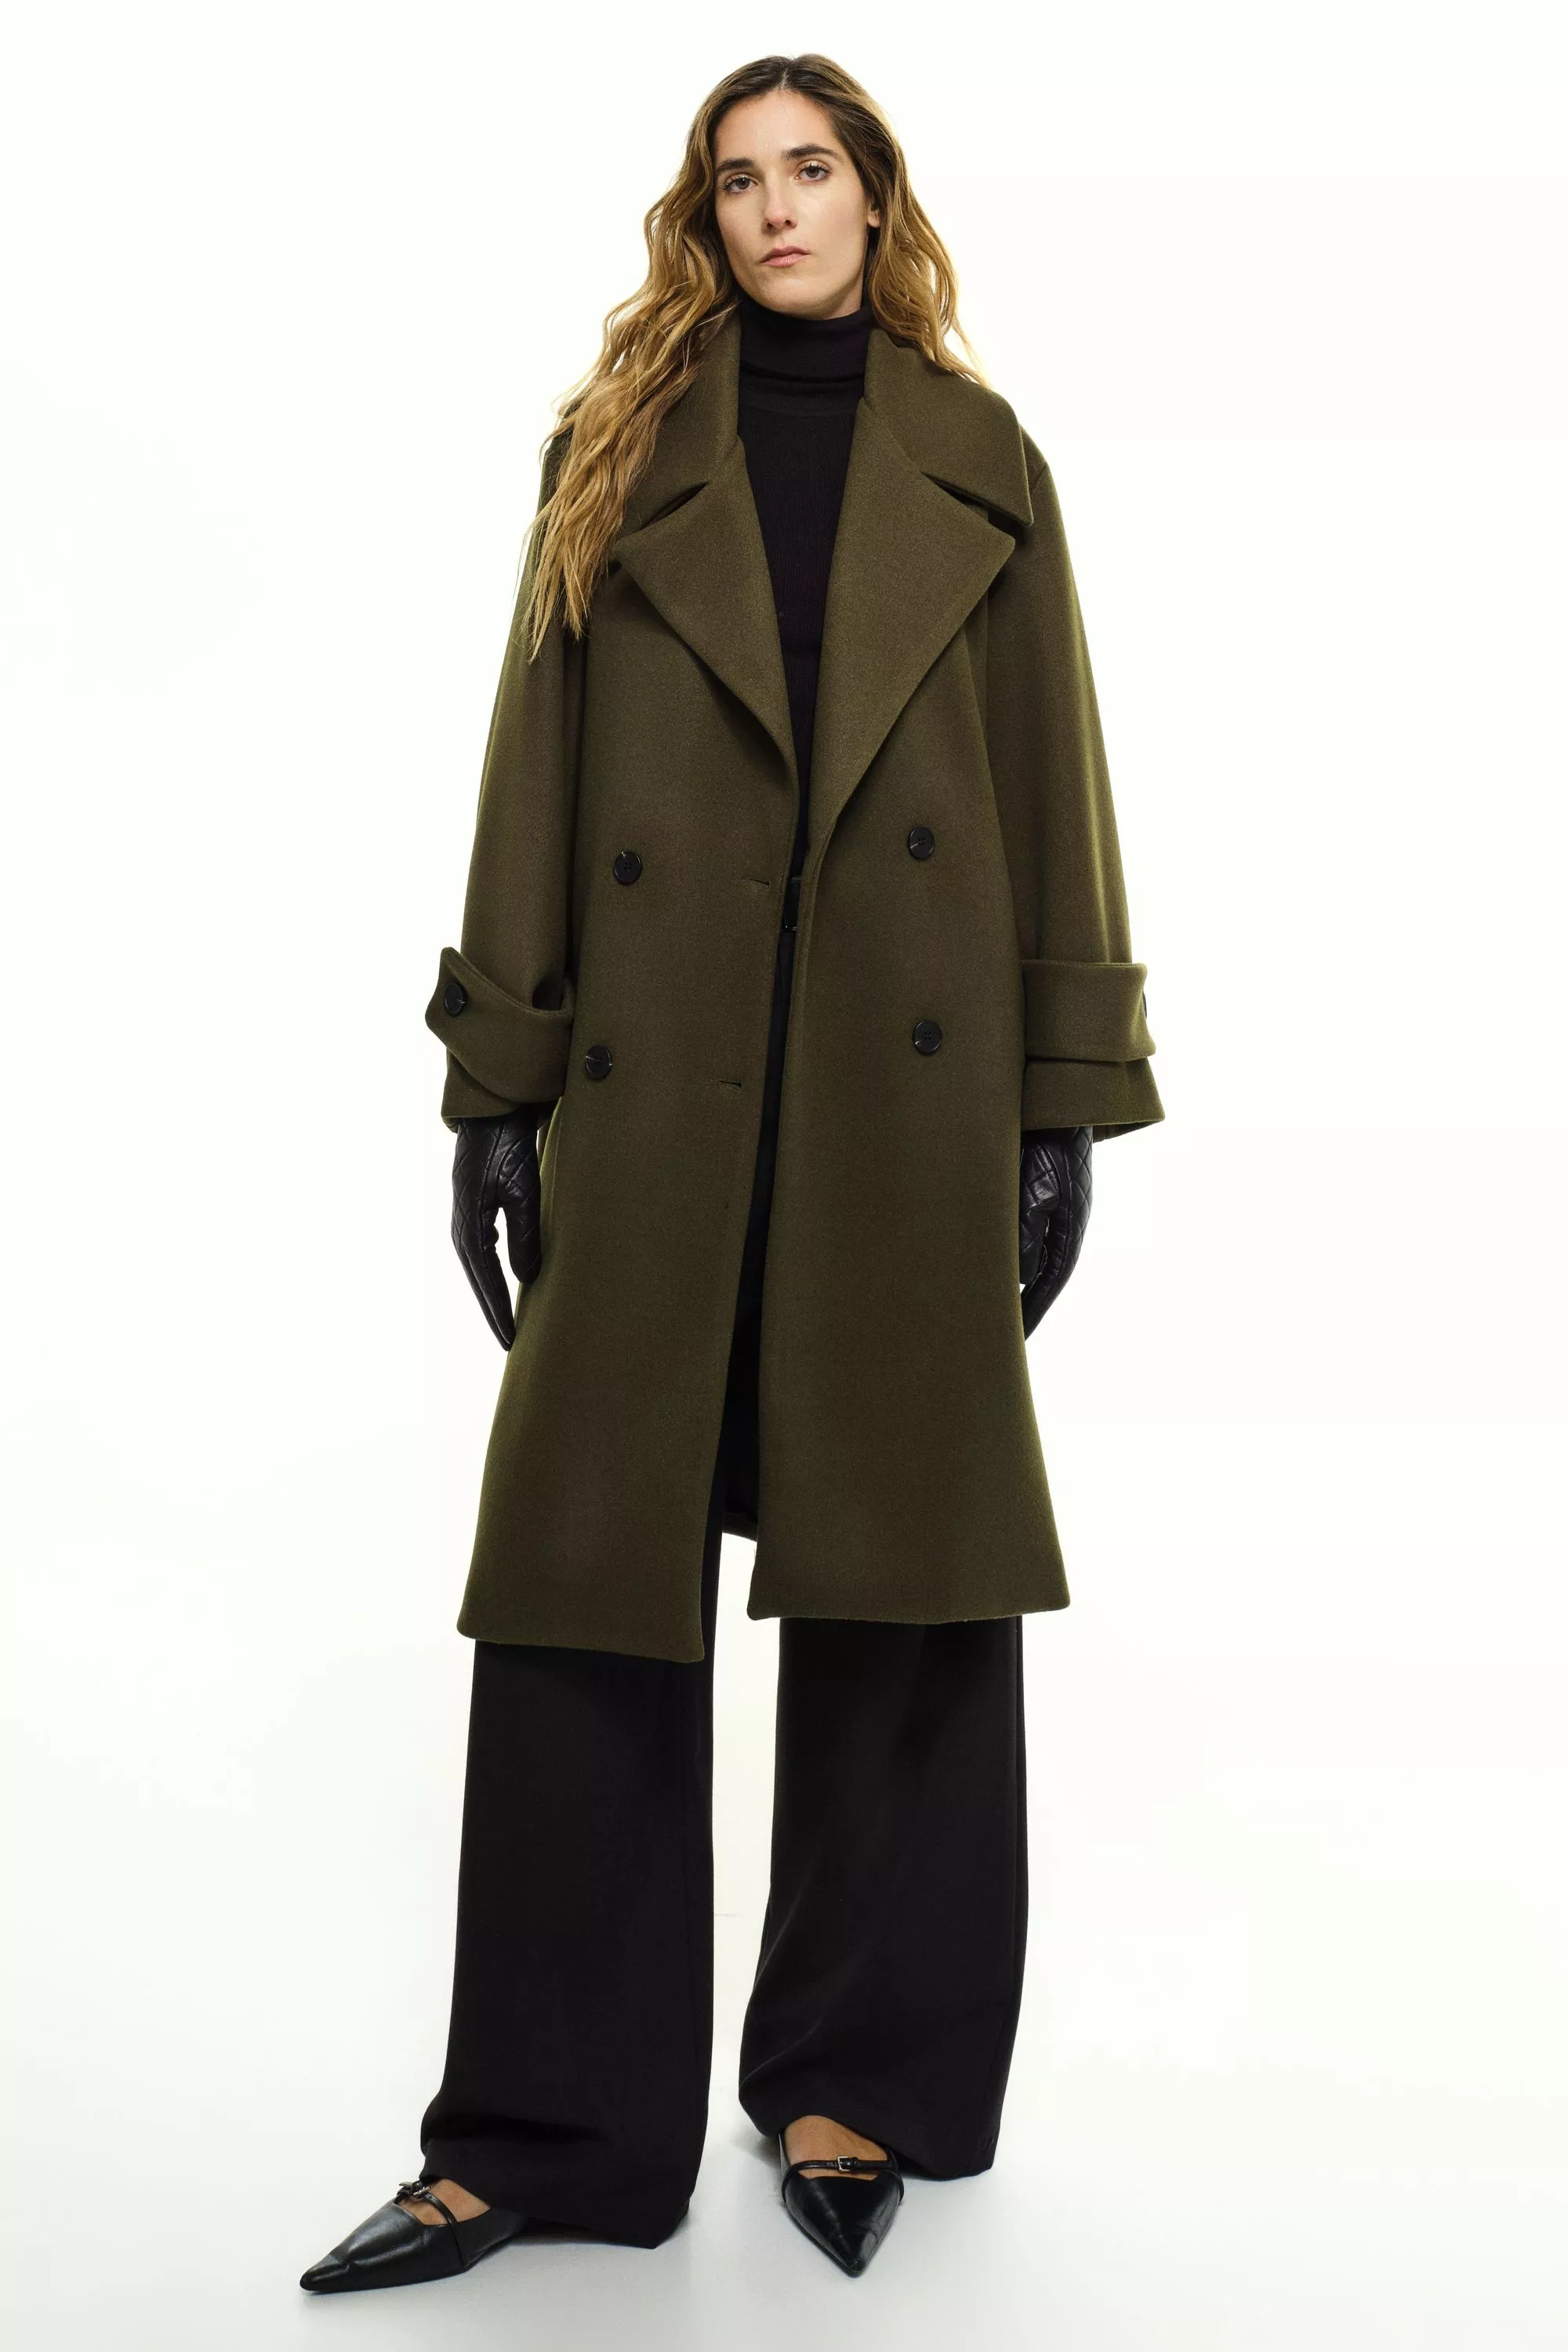 Damen Zweireihiger Mantel in Oliv von Ricano, Frontansicht am Model